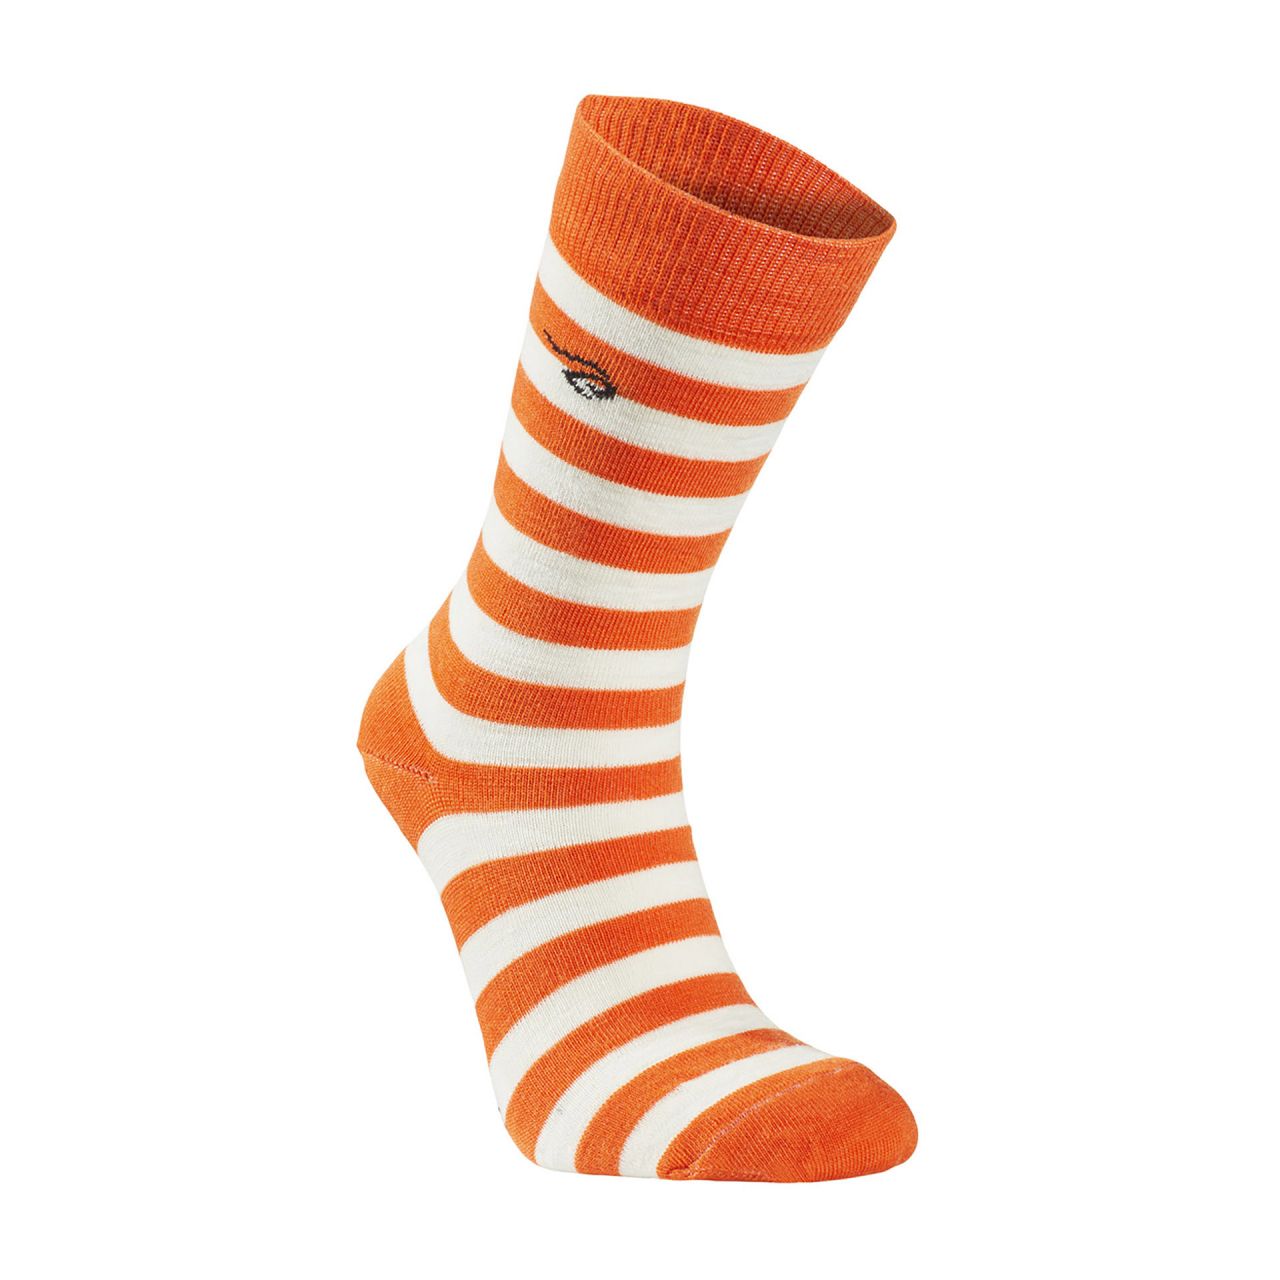 Wollsocke von IVANHOE, Modell "Stripe" Orange